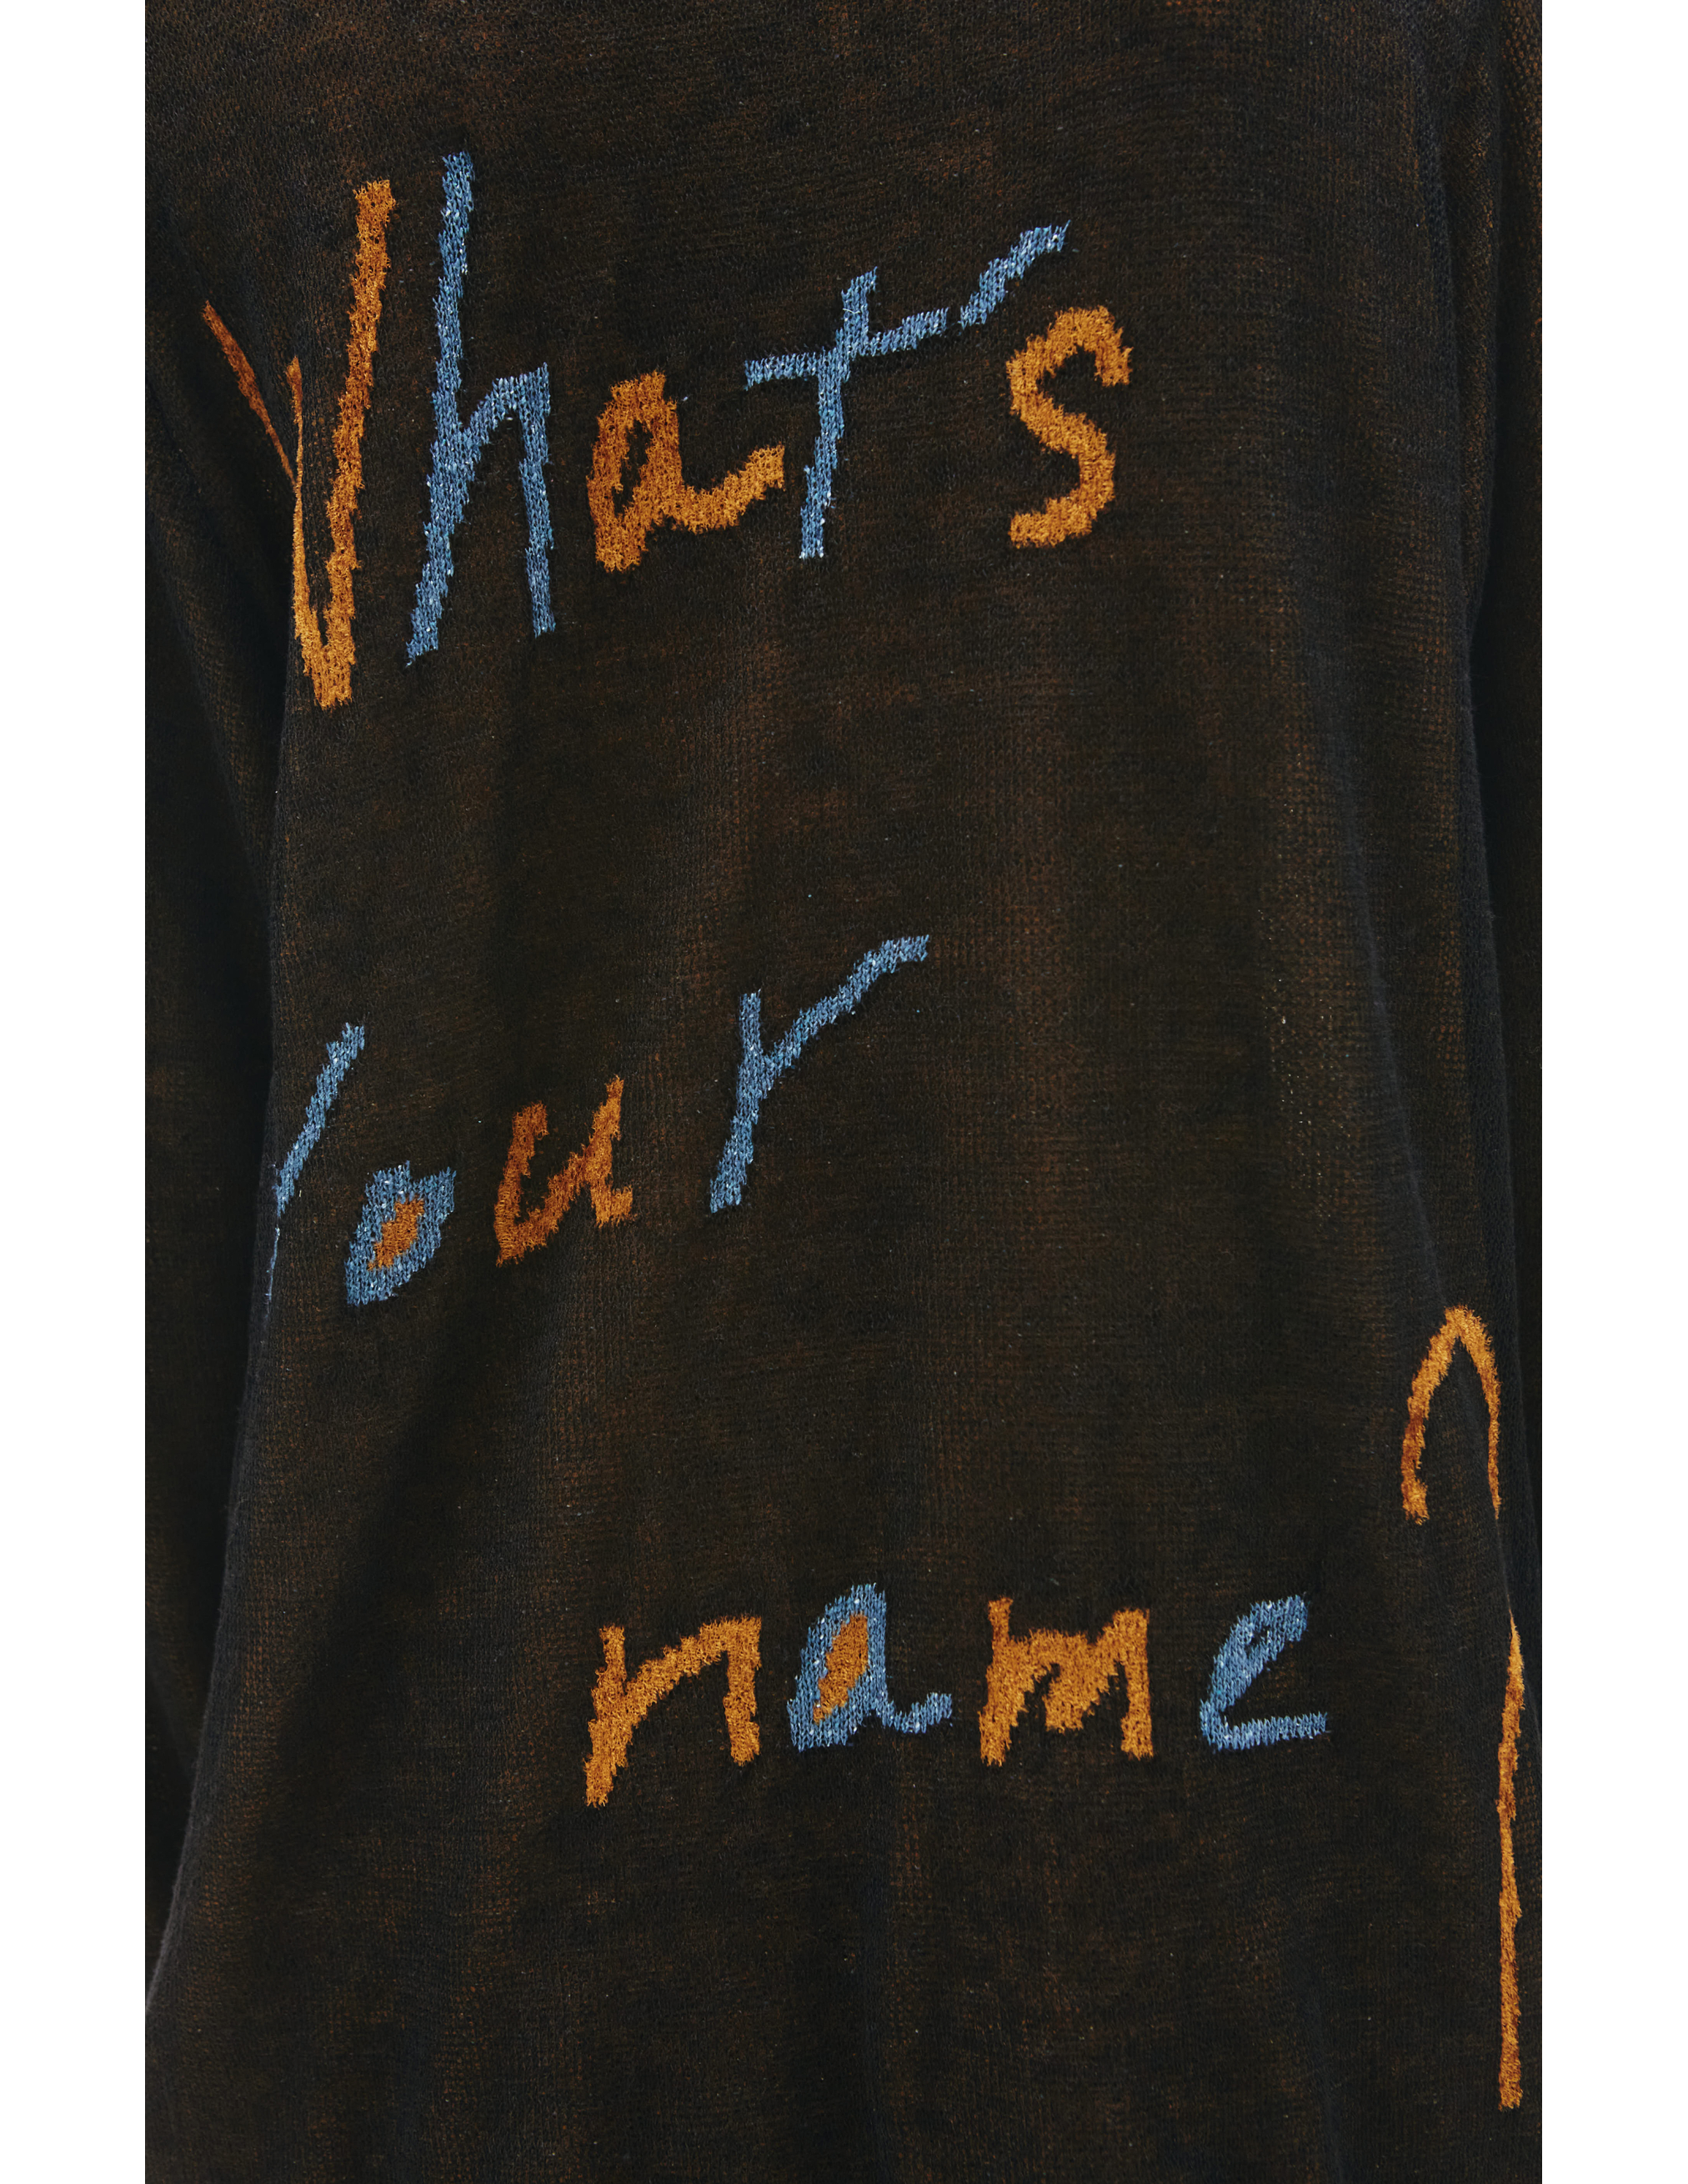 Черный свитер Whats your name Yohji Yamamoto HG-K13-373-1, размер 3 - фото 5